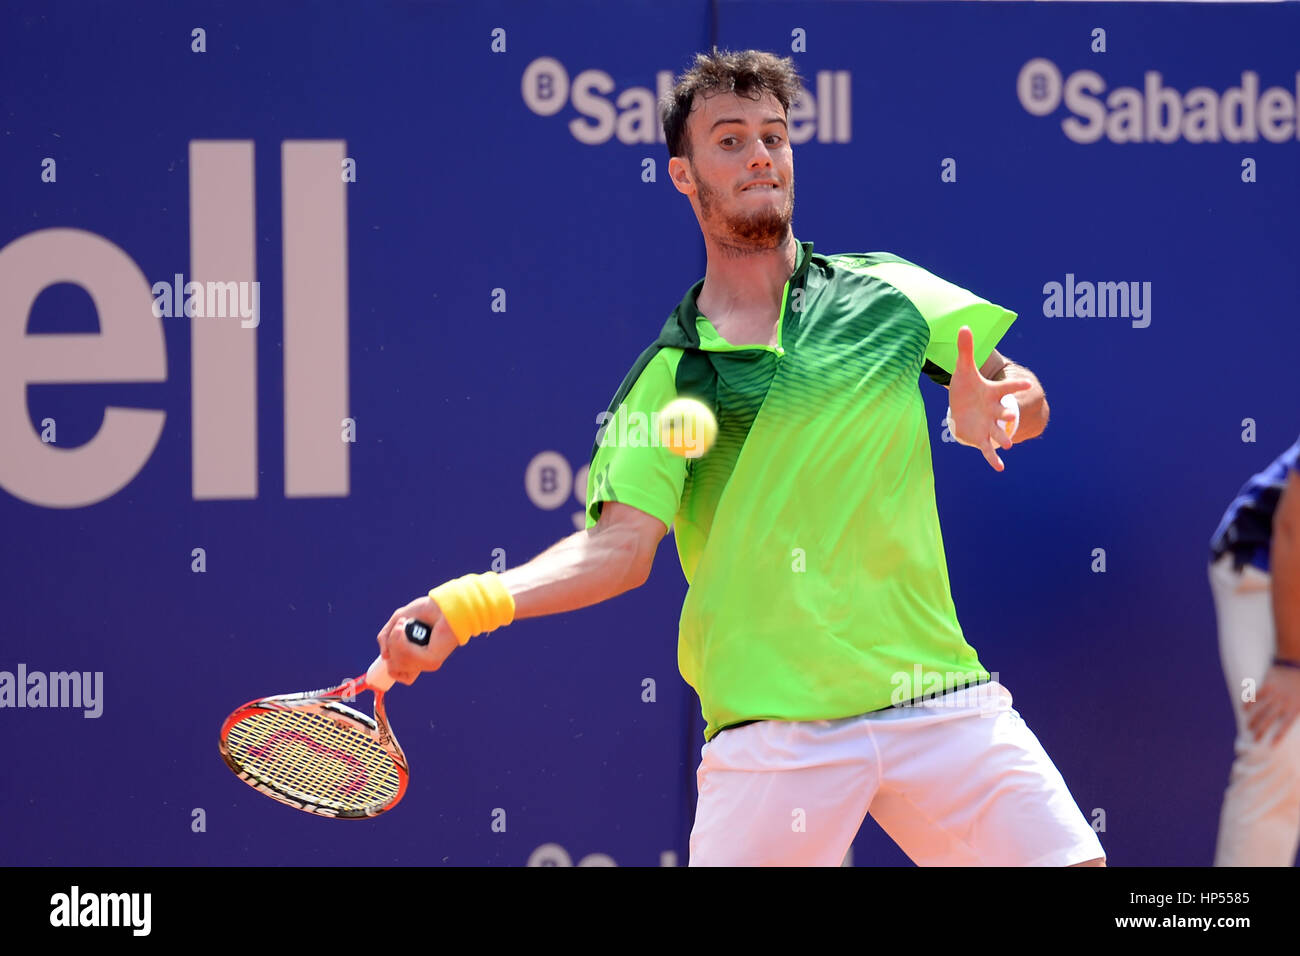 Barcelone - APR 18 : Javier Marti (joueur de tennis) joue à l'ATP Open de  Barcelone Banc Sabadell Conde de Godo Tournament le 18 avril, 2015 dans B  Photo Stock - Alamy